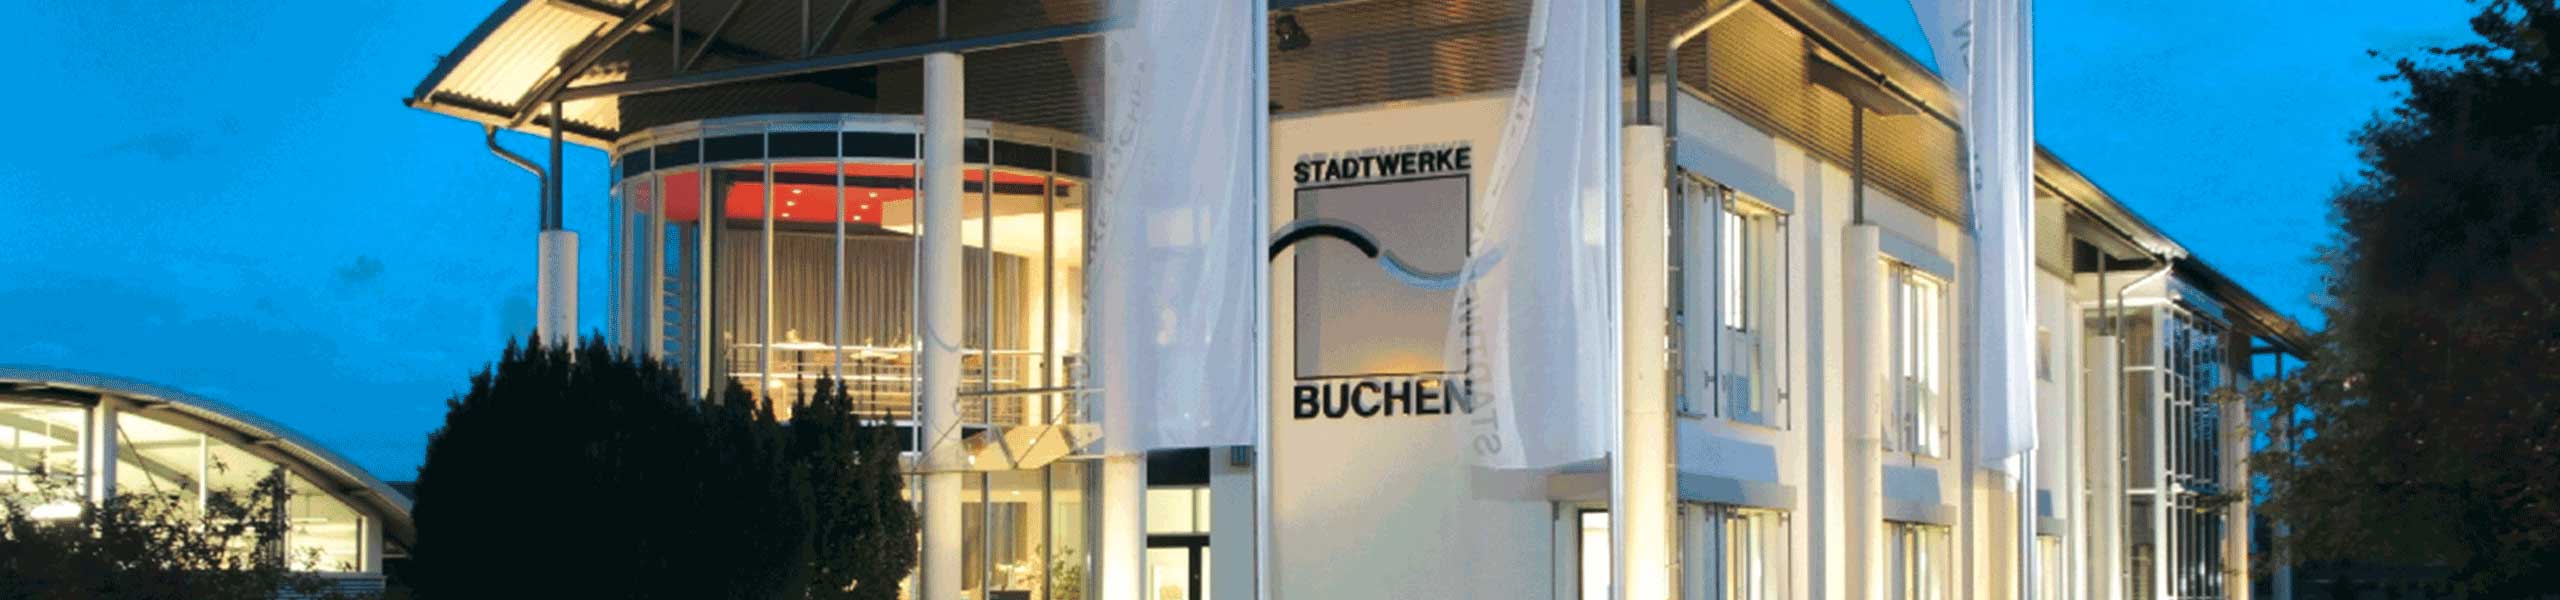 Stadtwerke Buchen GmbH & Co KG - Ihr Versorger vor Ort - THG-Quote Prämie sichern